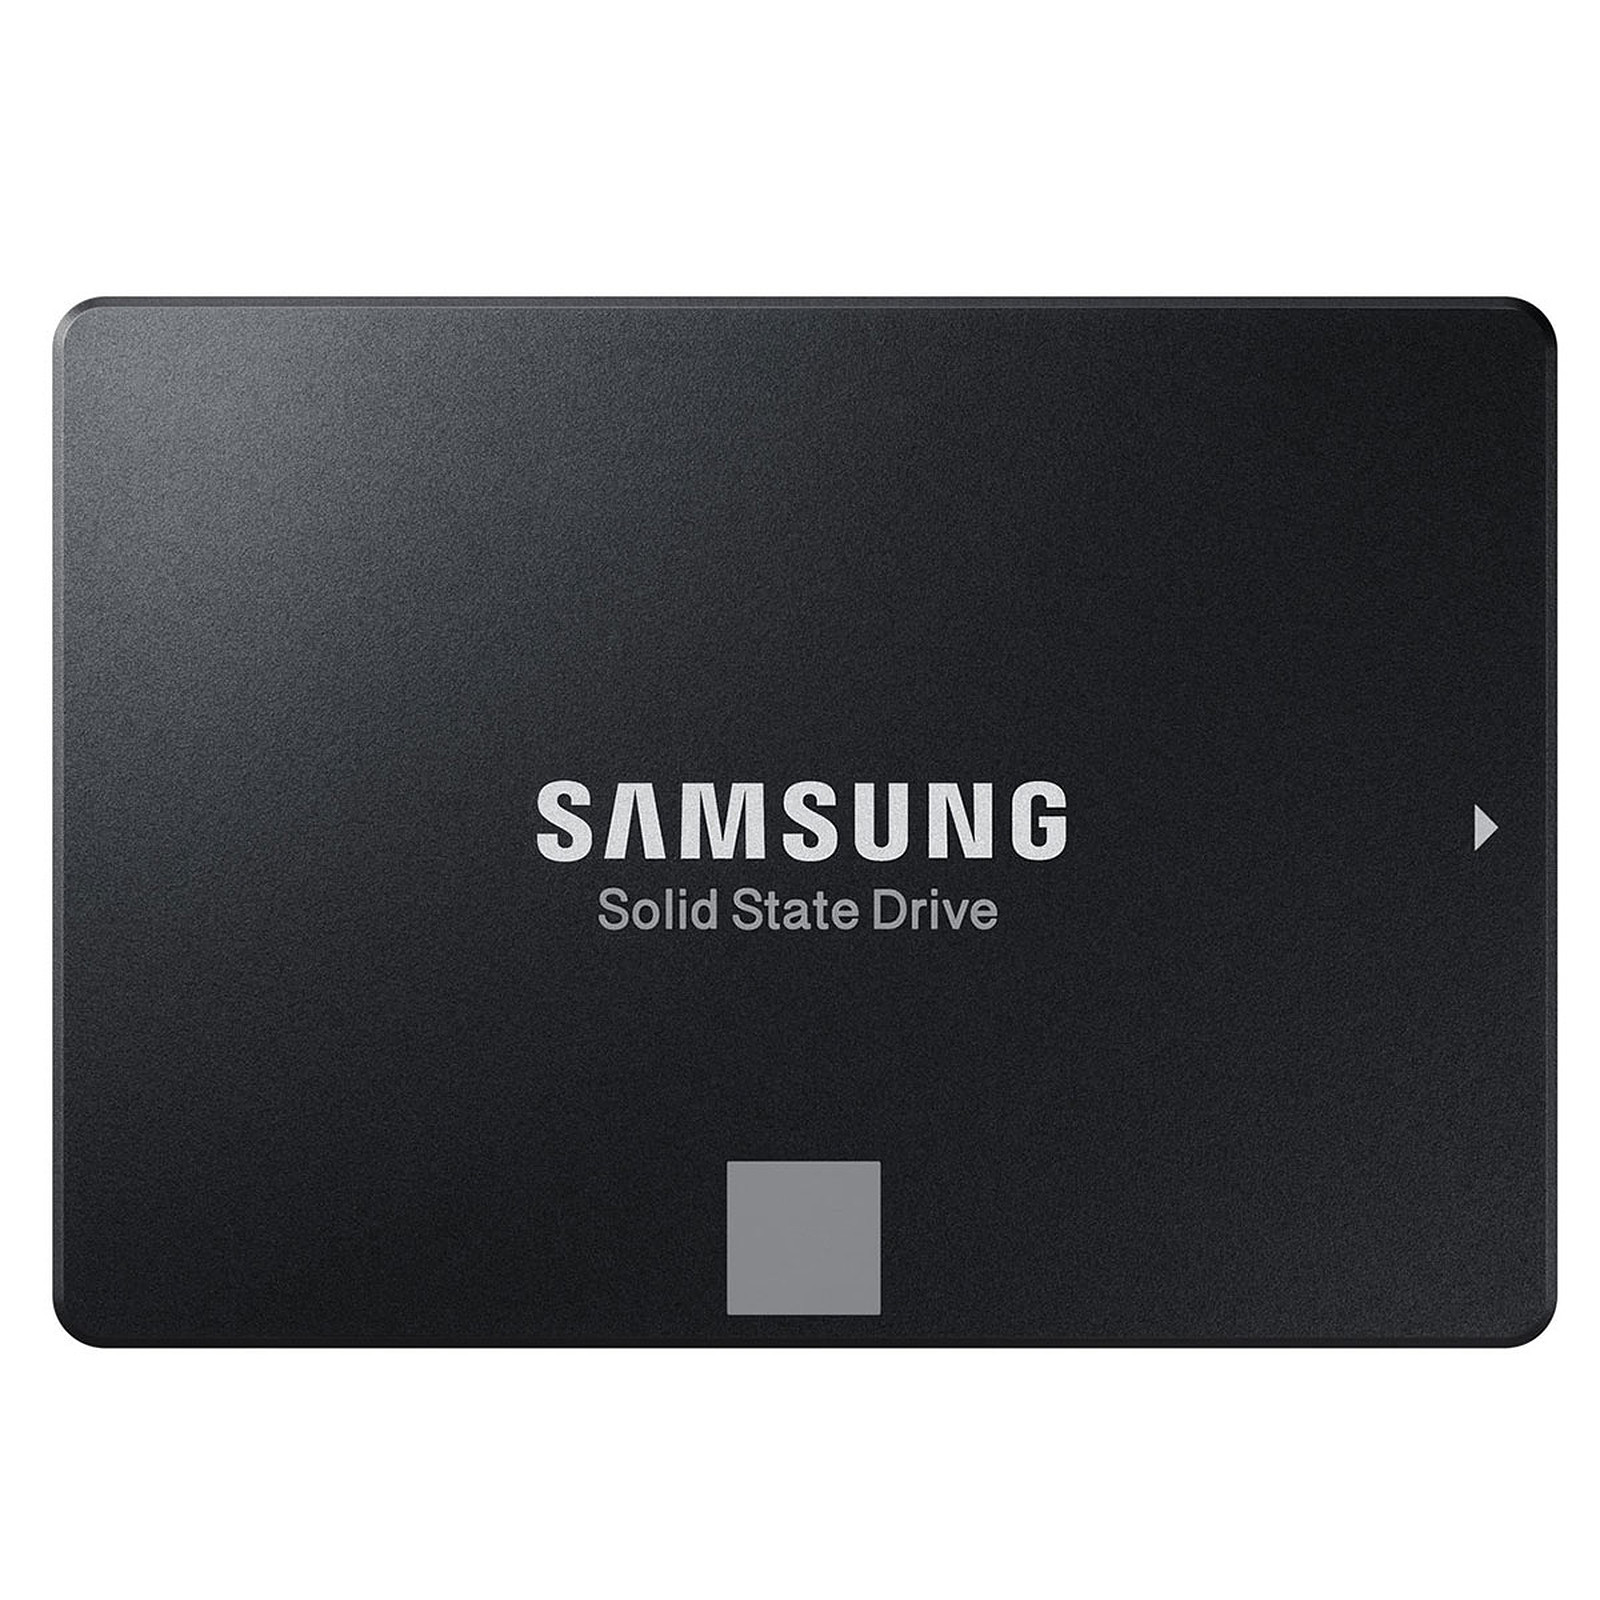 Disque SSD interne Disque SSD 2.5 pouces : Achat / Vente Disque SSD interne  Disque SSD 2.5 pouces sur